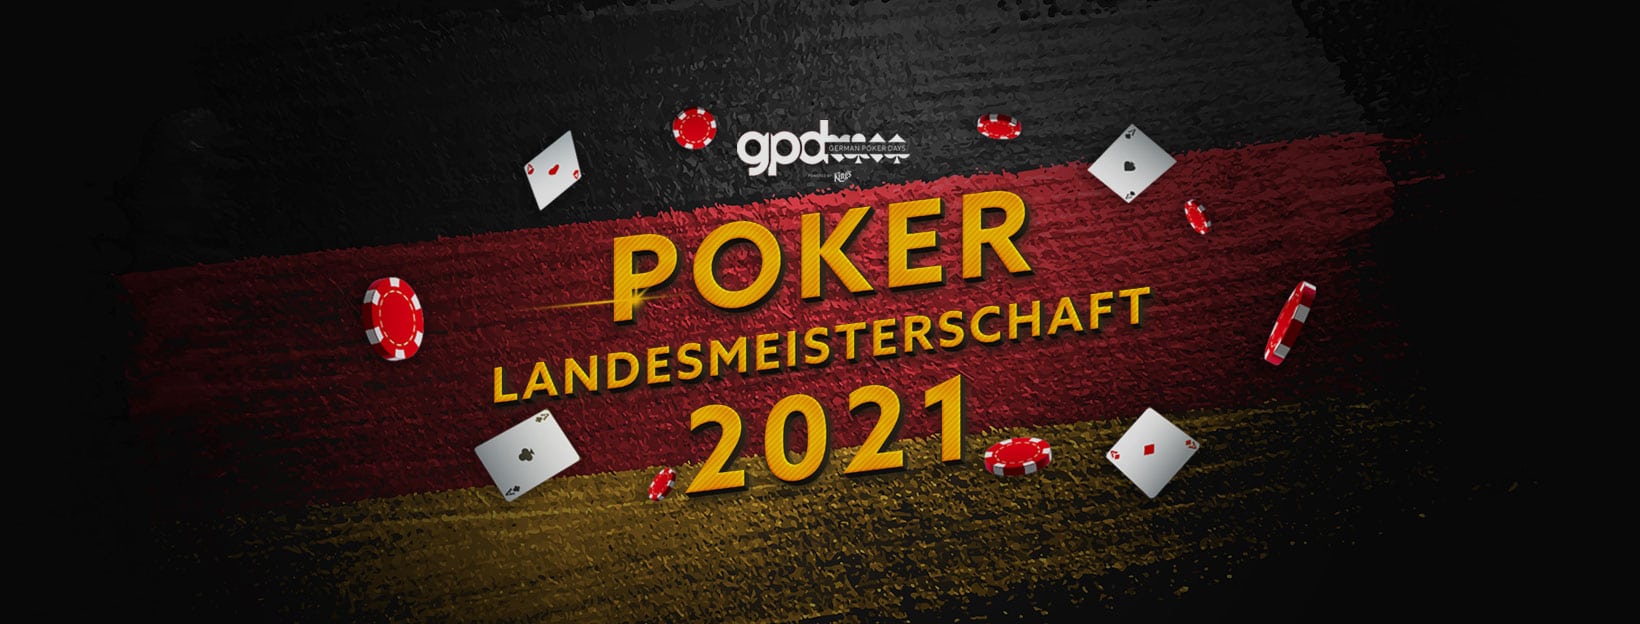 Poker Landesmeisterschaft 2021 Hamburg